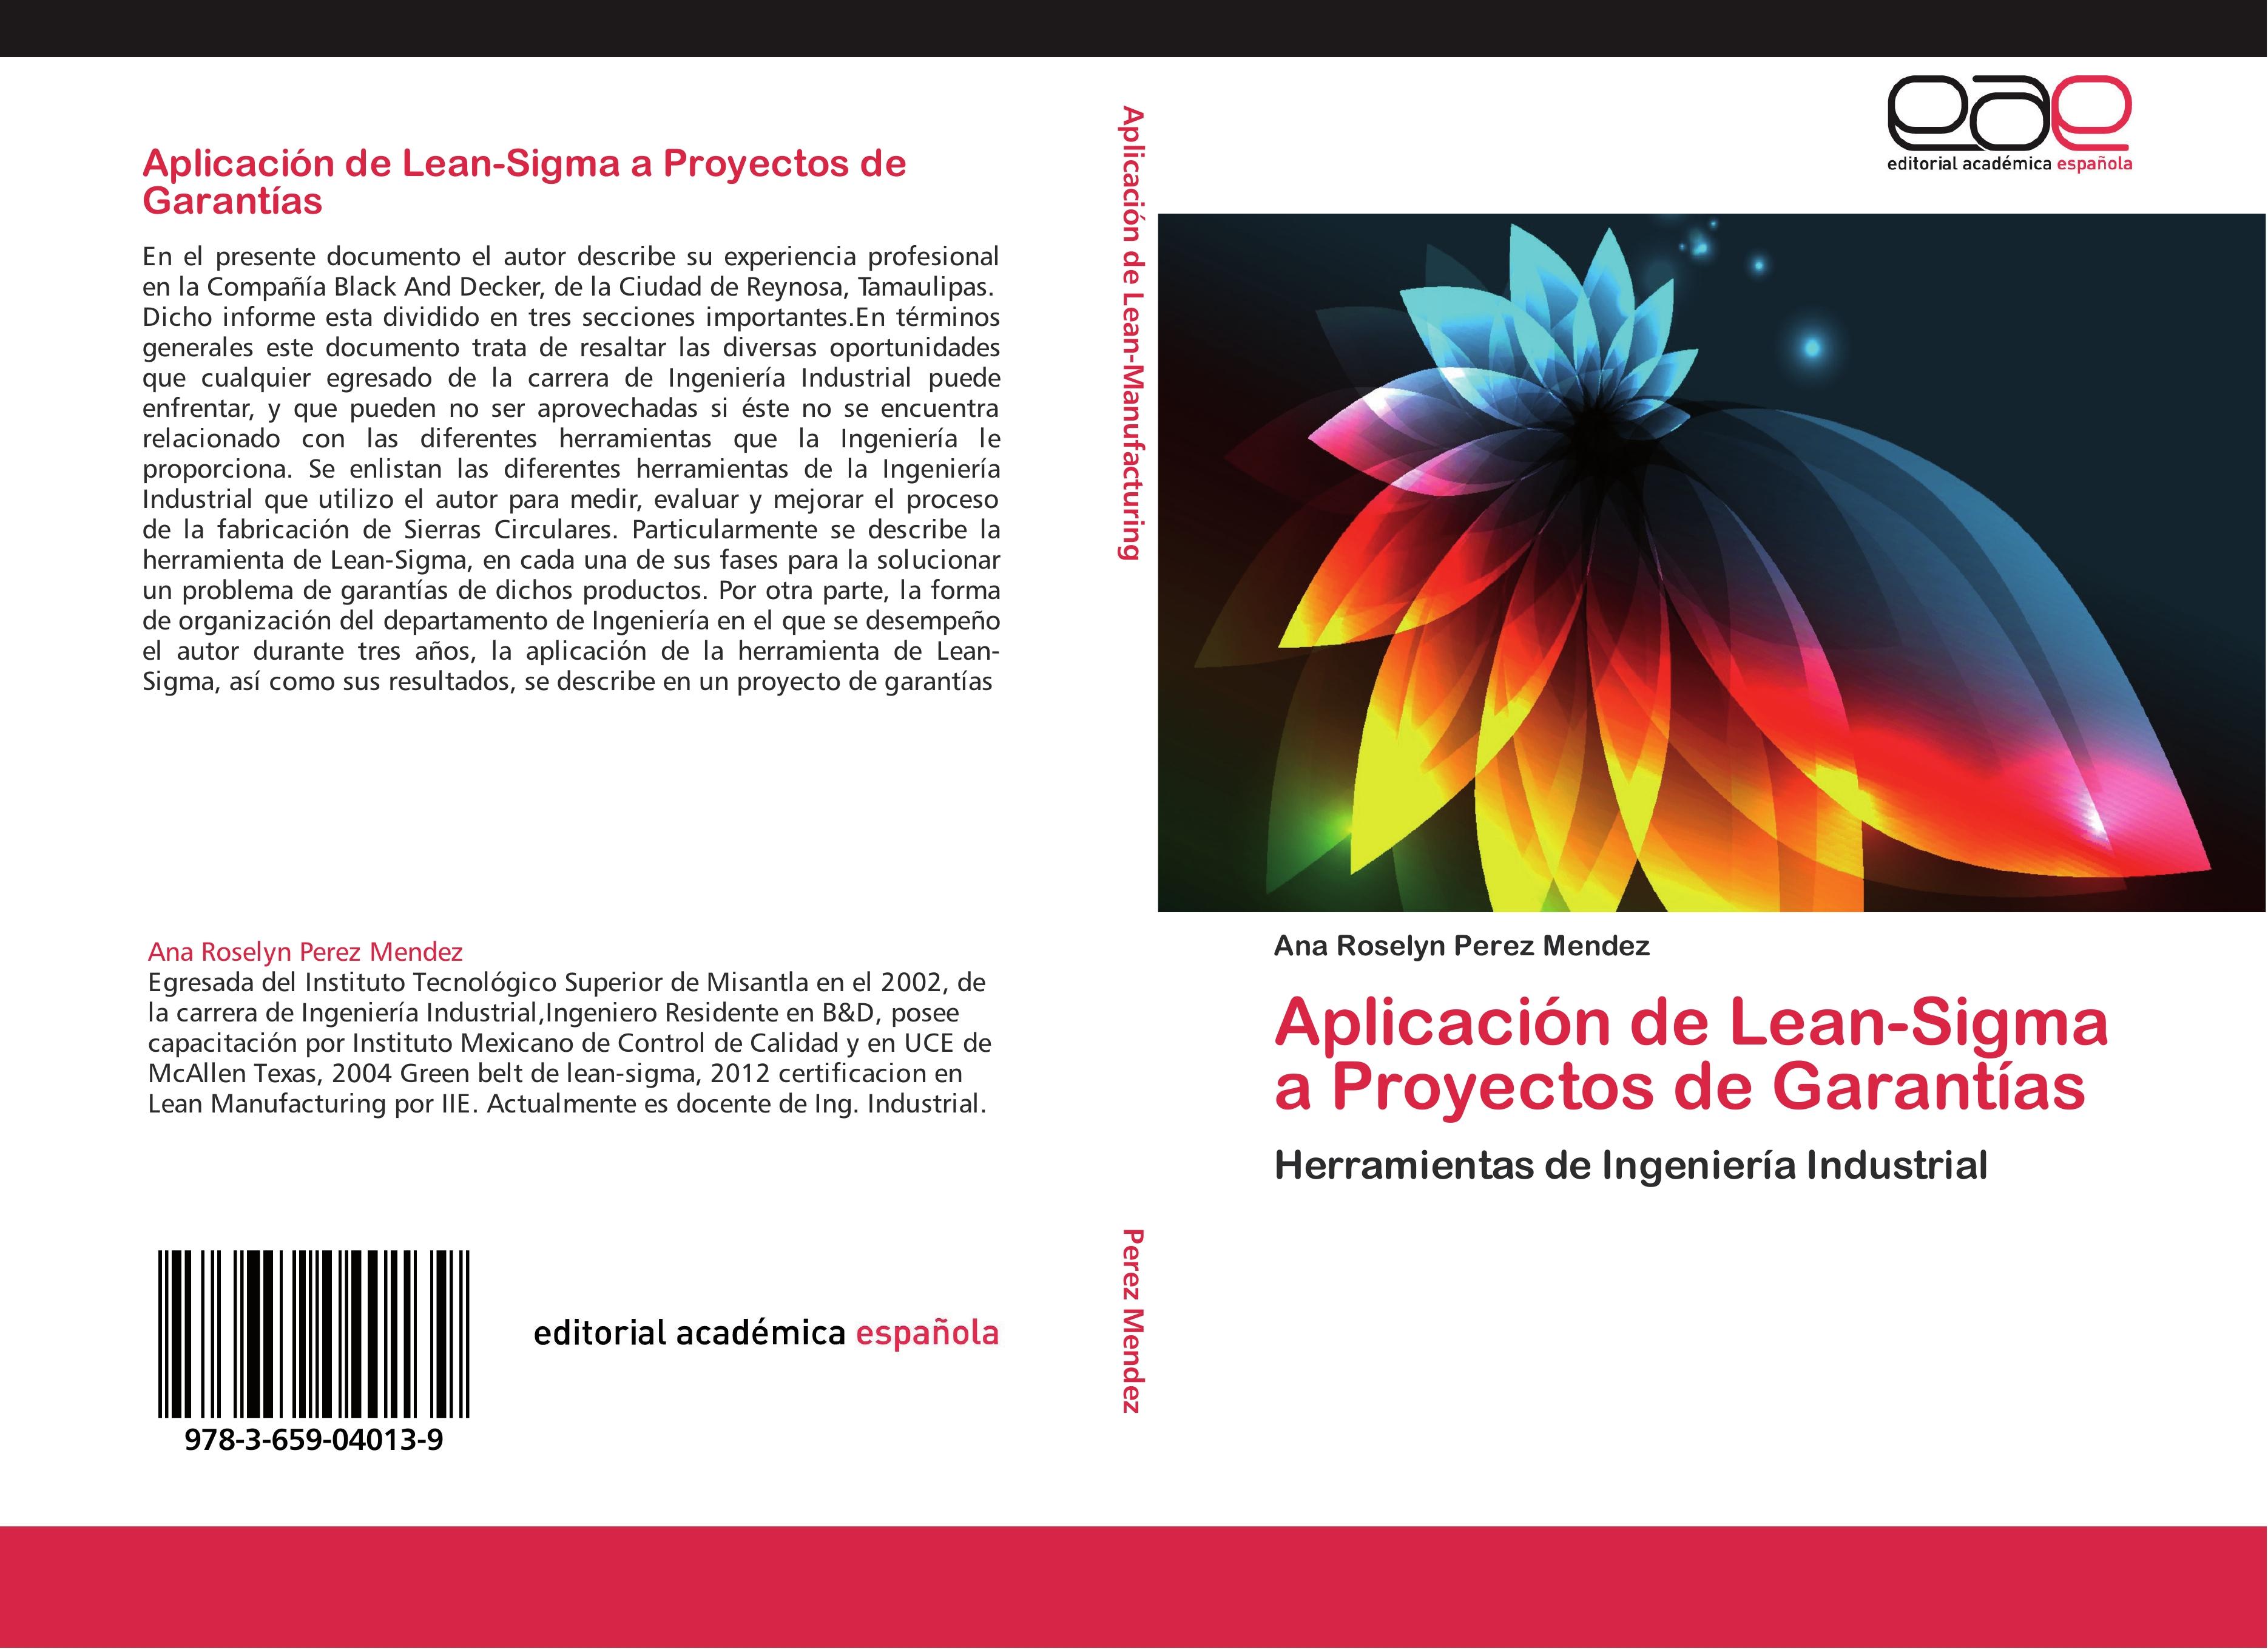 AplicaciÃ³n de Lean-Sigma a Proyectos de GarantÃ­as - Ana Roselyn Perez Mendez